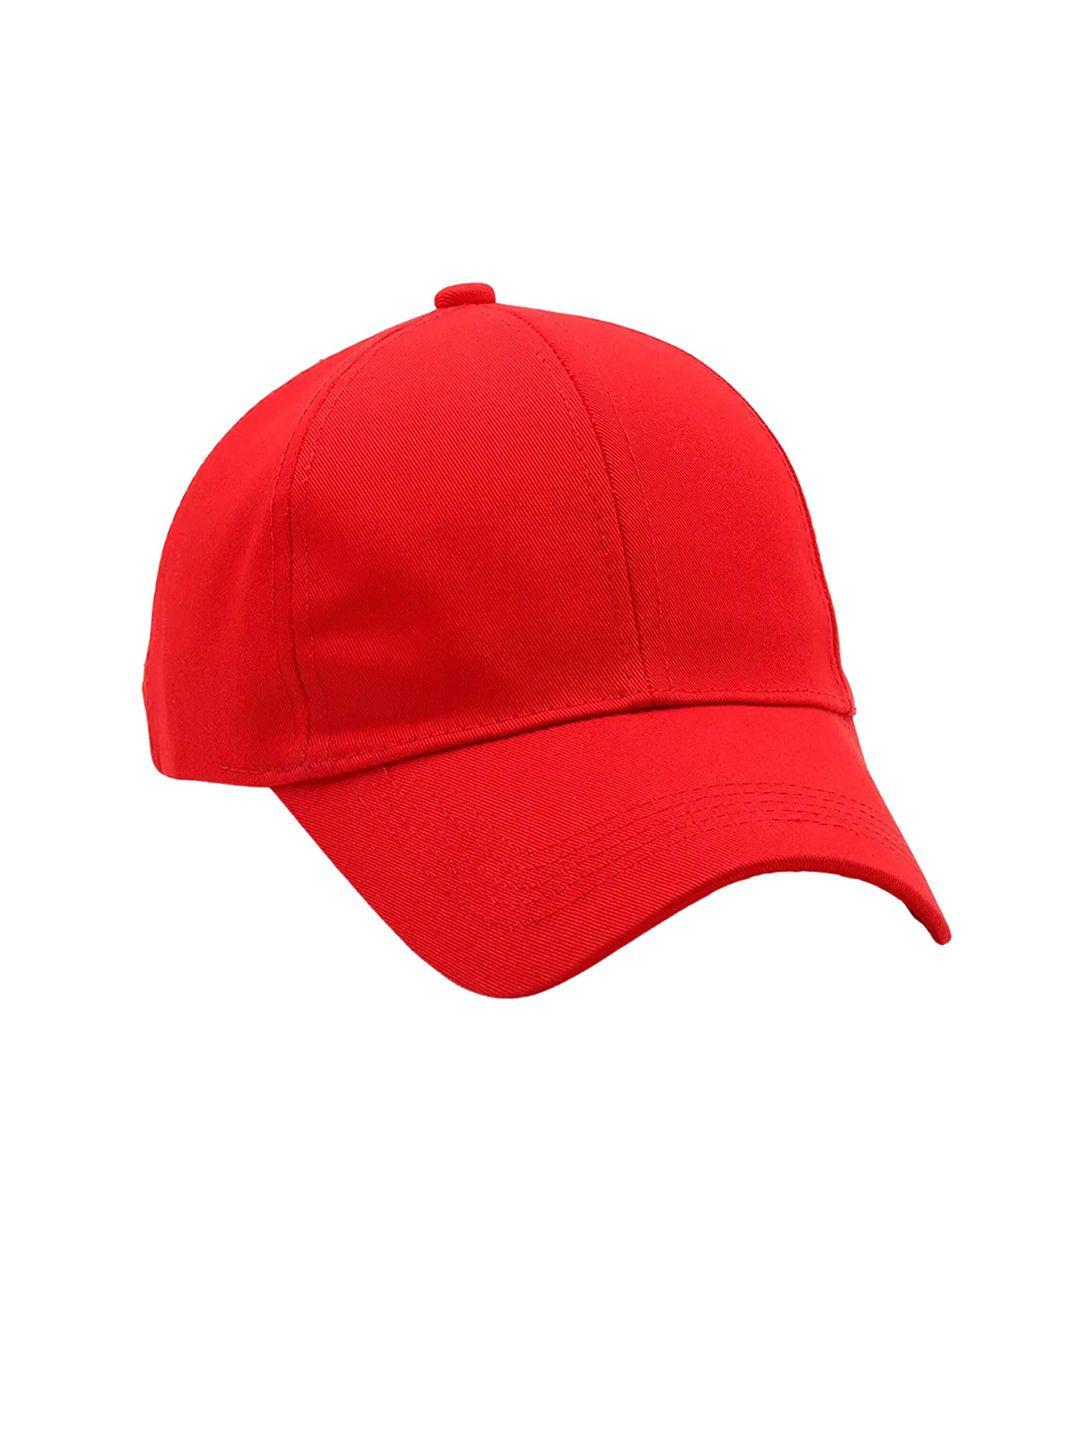 zacharias unisex red baseball cap